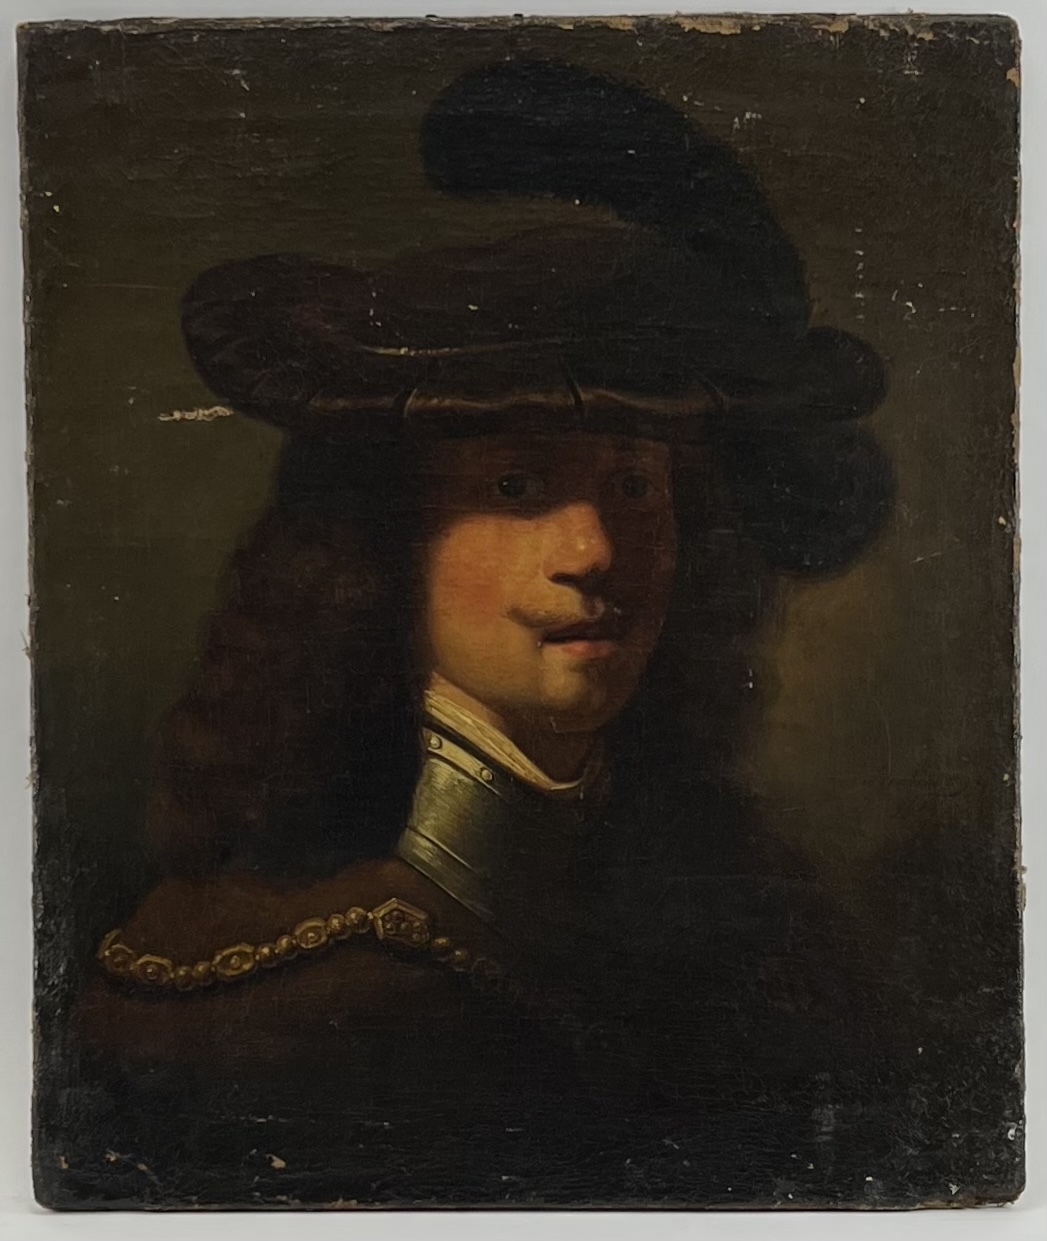 Artwork by Rembrandt van Rijn, Zelfportret van Rembrandt met fluwelen baret en gouden ketting, Made of Oil on canvas